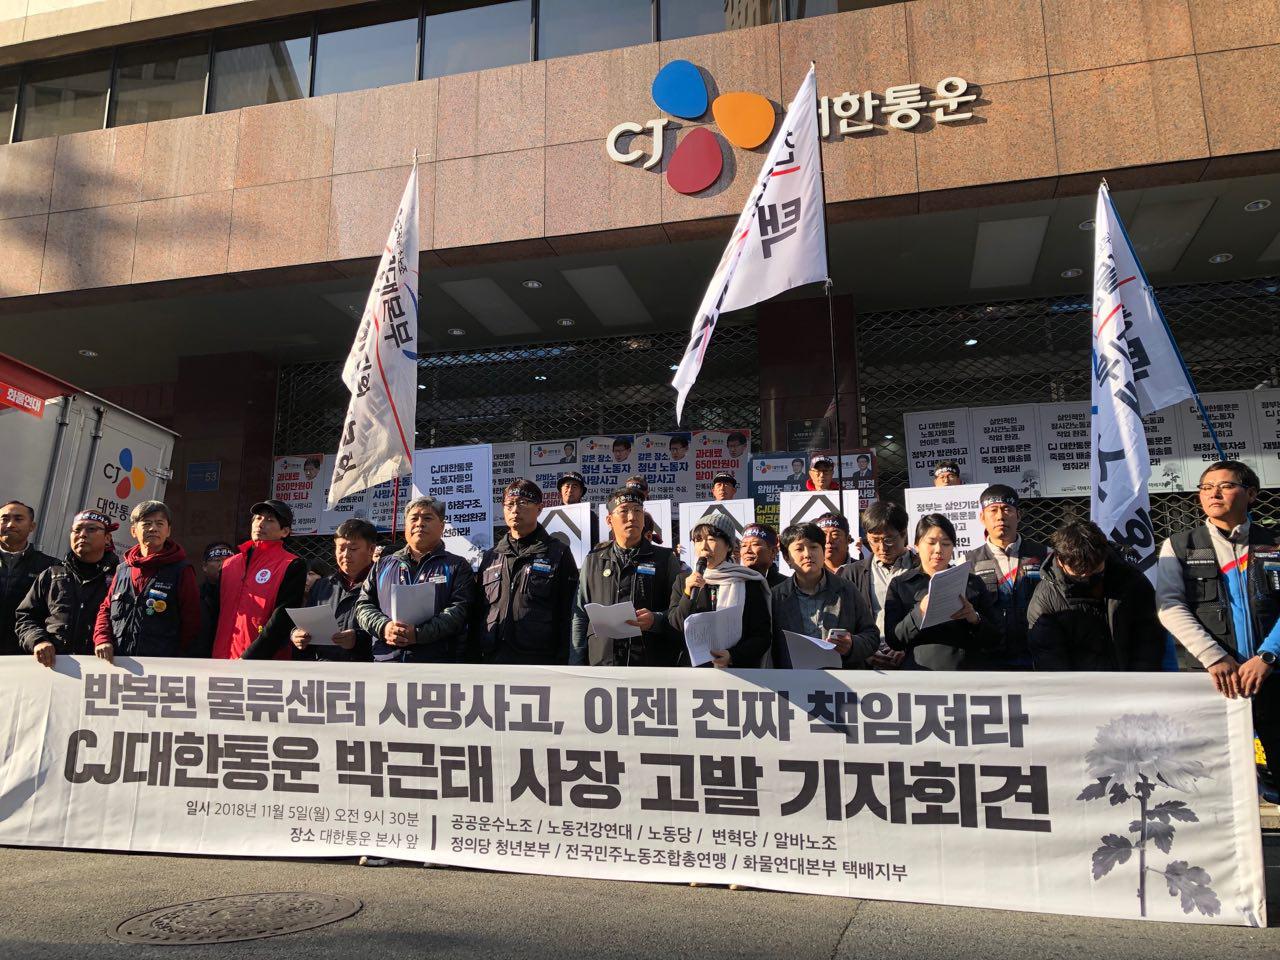 [보도자료] CJ대한통운물류센터 노동자 연쇄사망 CJ대한통운 박근태사장 고발 기자회견